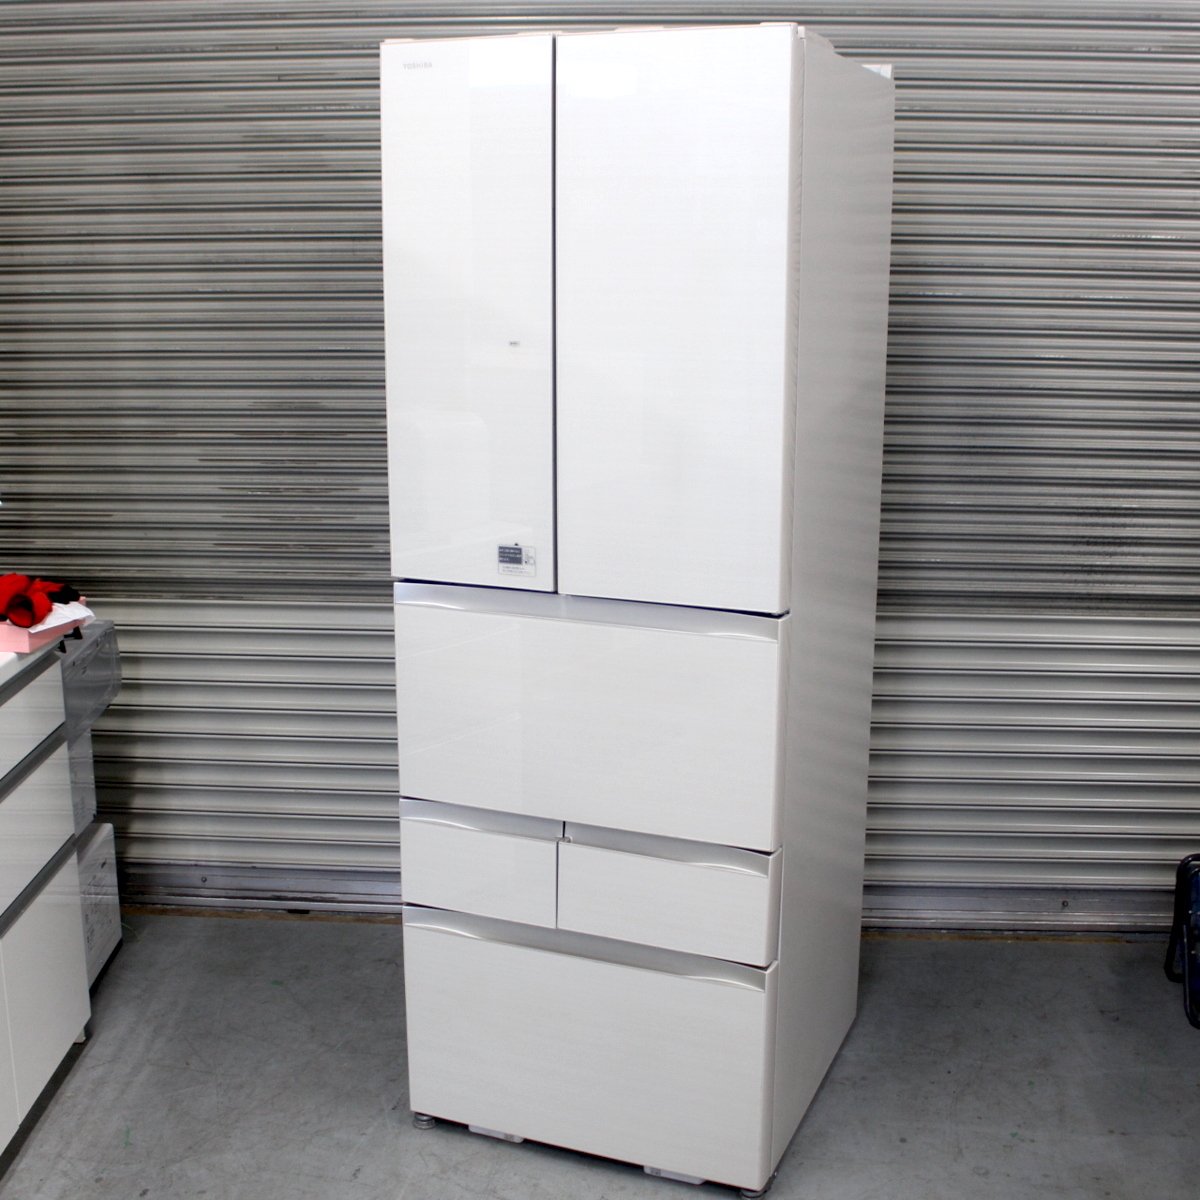 東芝 ノンフロン冷凍冷蔵庫 GR-J510FV(ZC) 508L 2016年製 6ドア